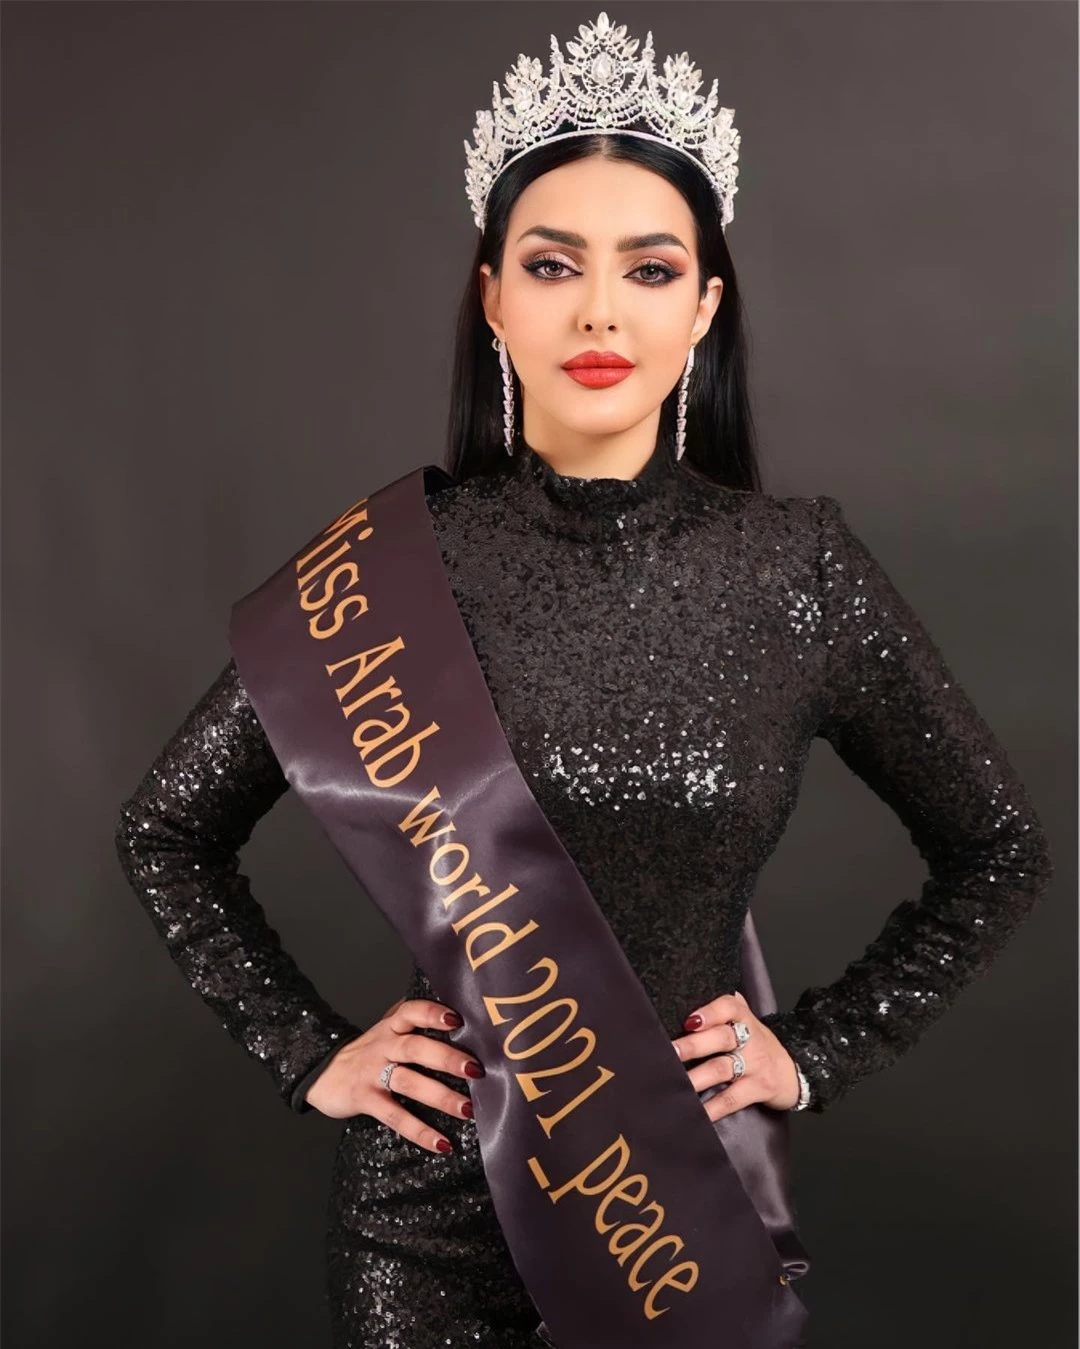 Nhan sắc gây tranh cãi của người đẹp Saudi Arabia đầu tiên thi Hoa hậu Hoàn vũ ảnh 5